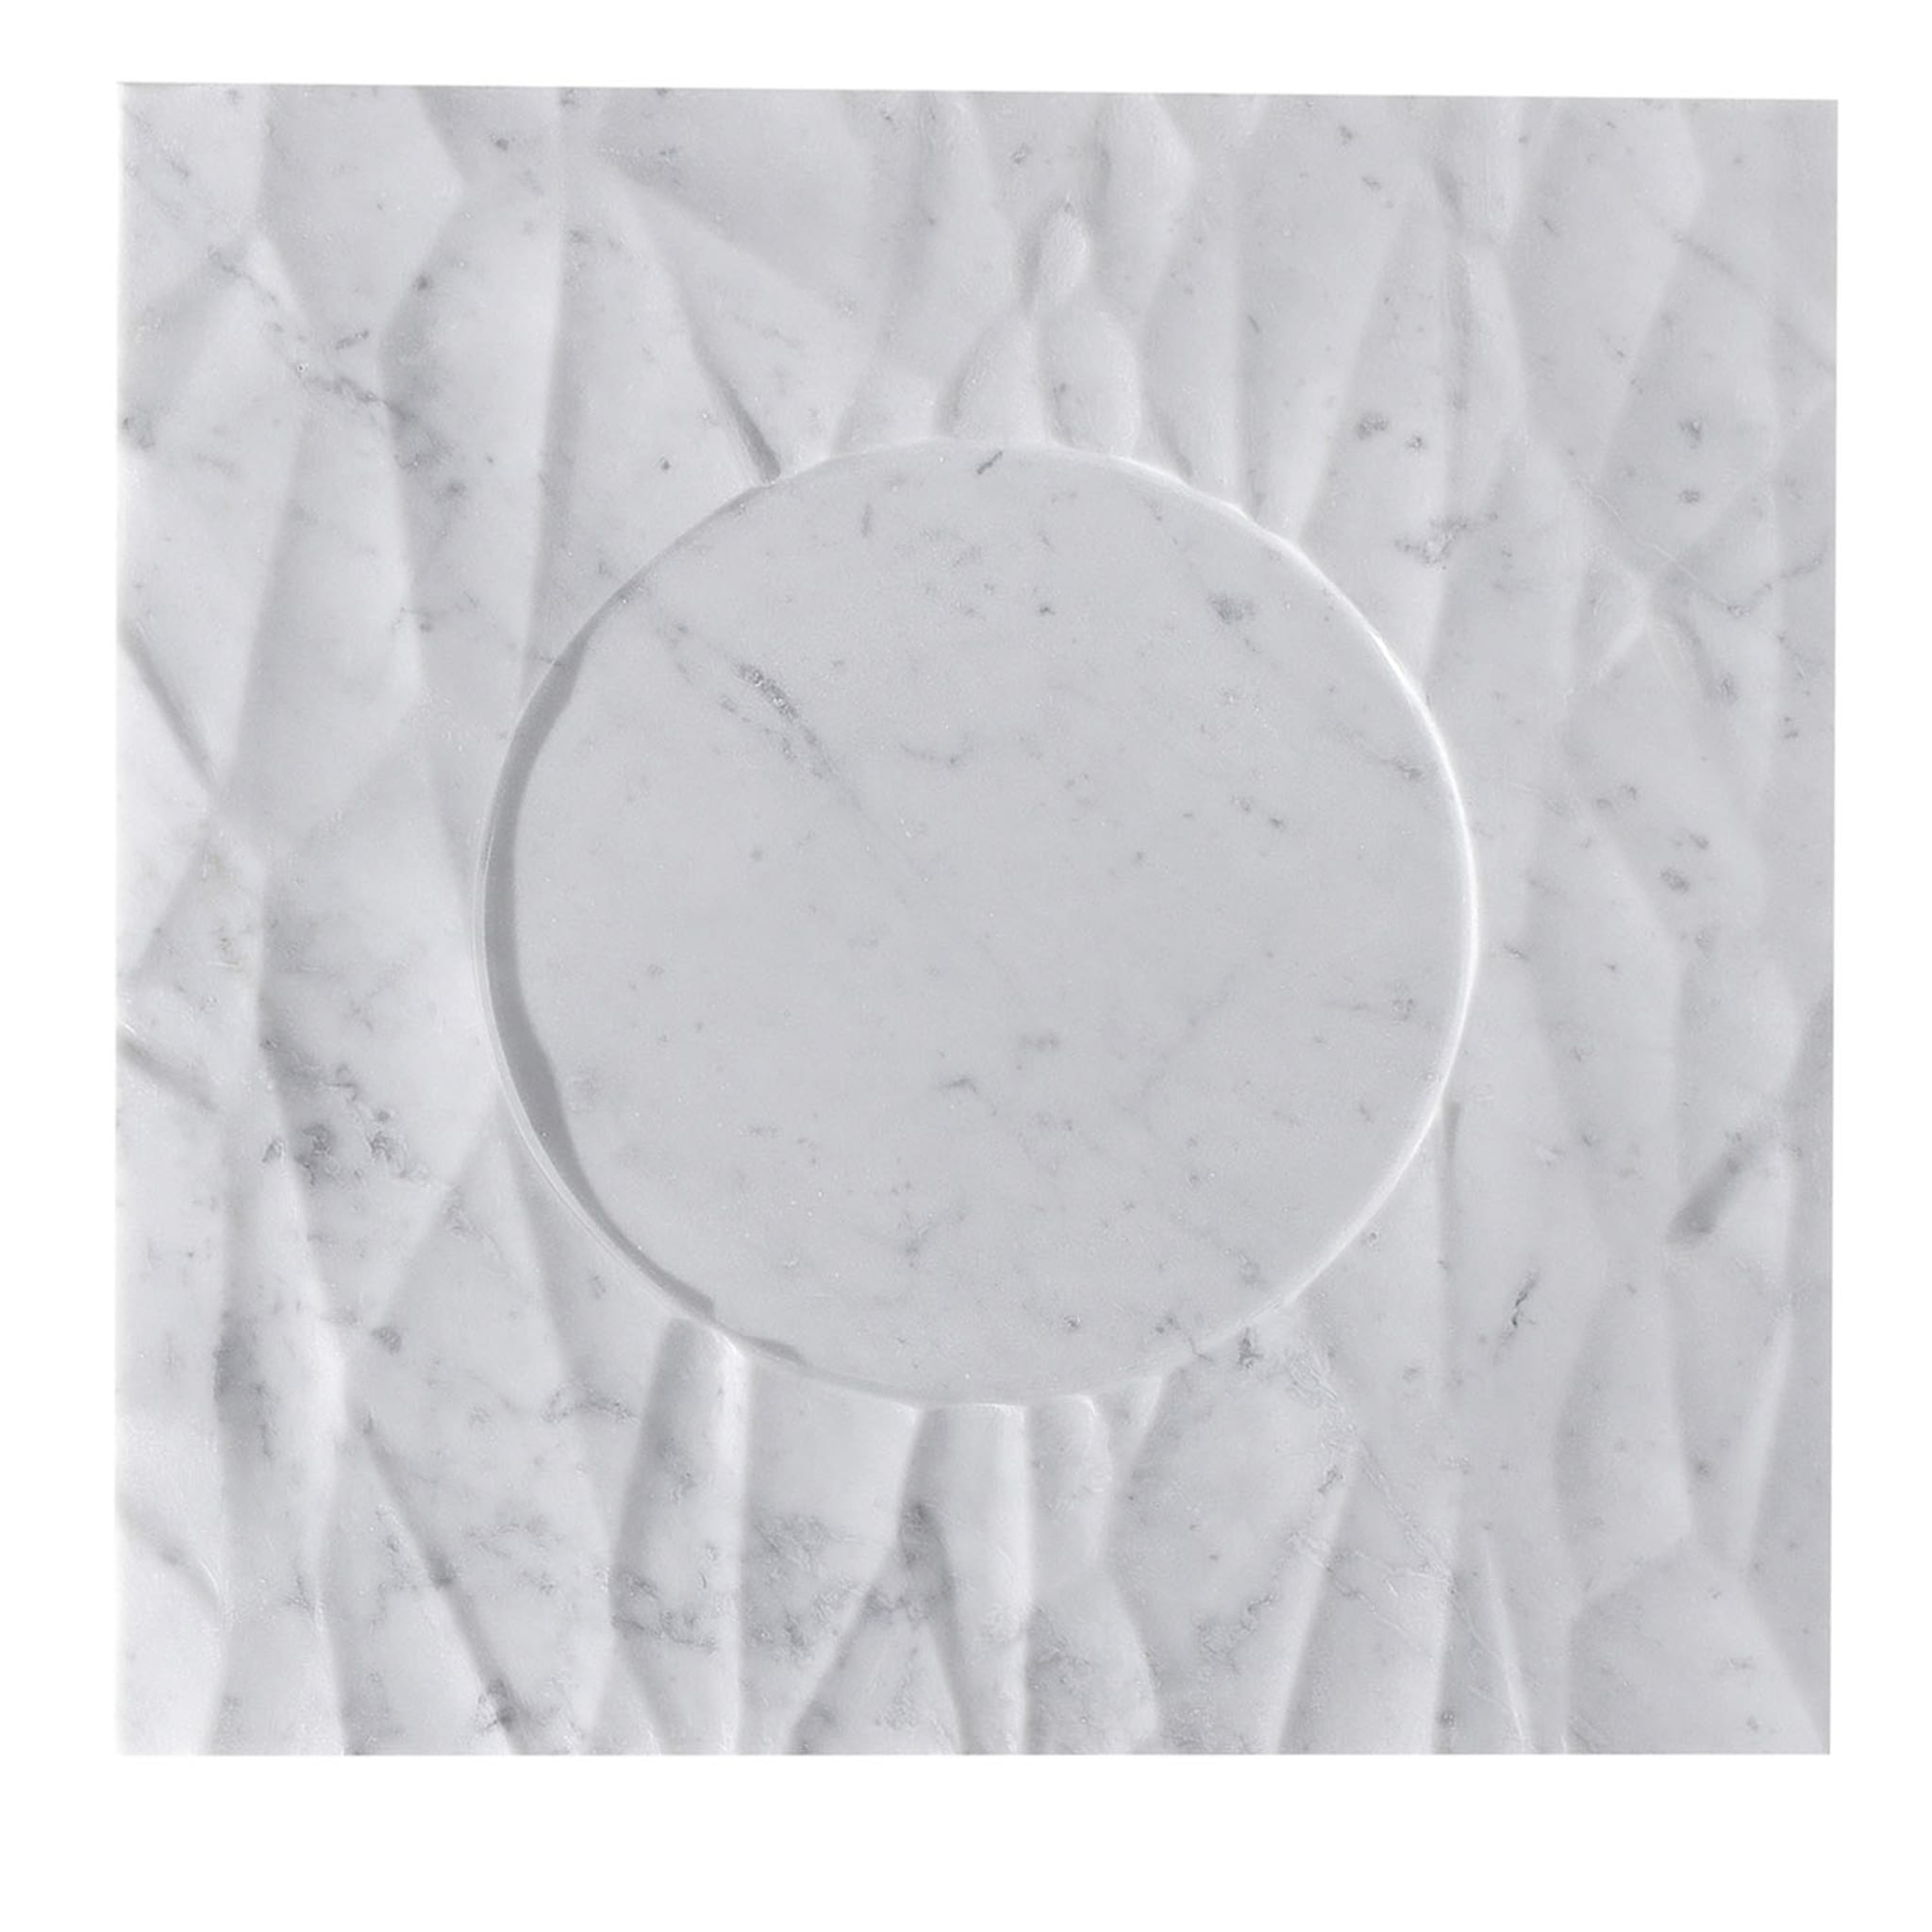 Plato Q de mármol blanco de Carrara Palermo - Vista principal